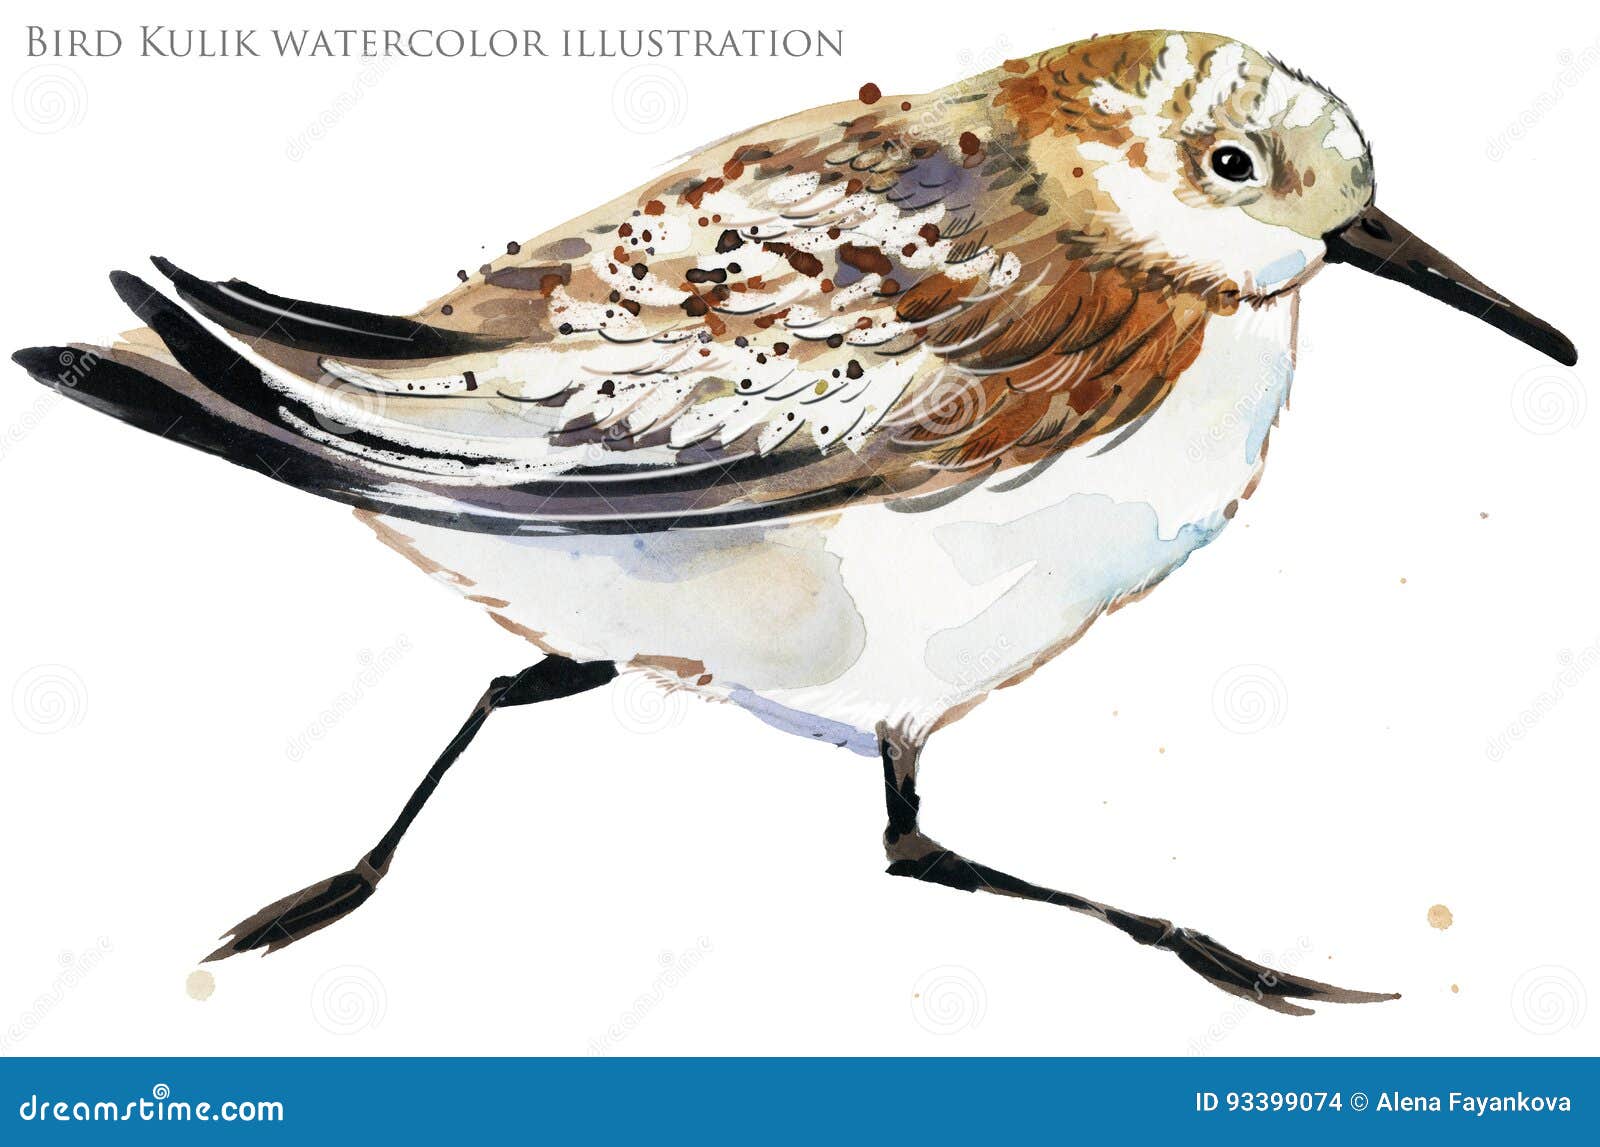 sandpiper water bird watercolor 